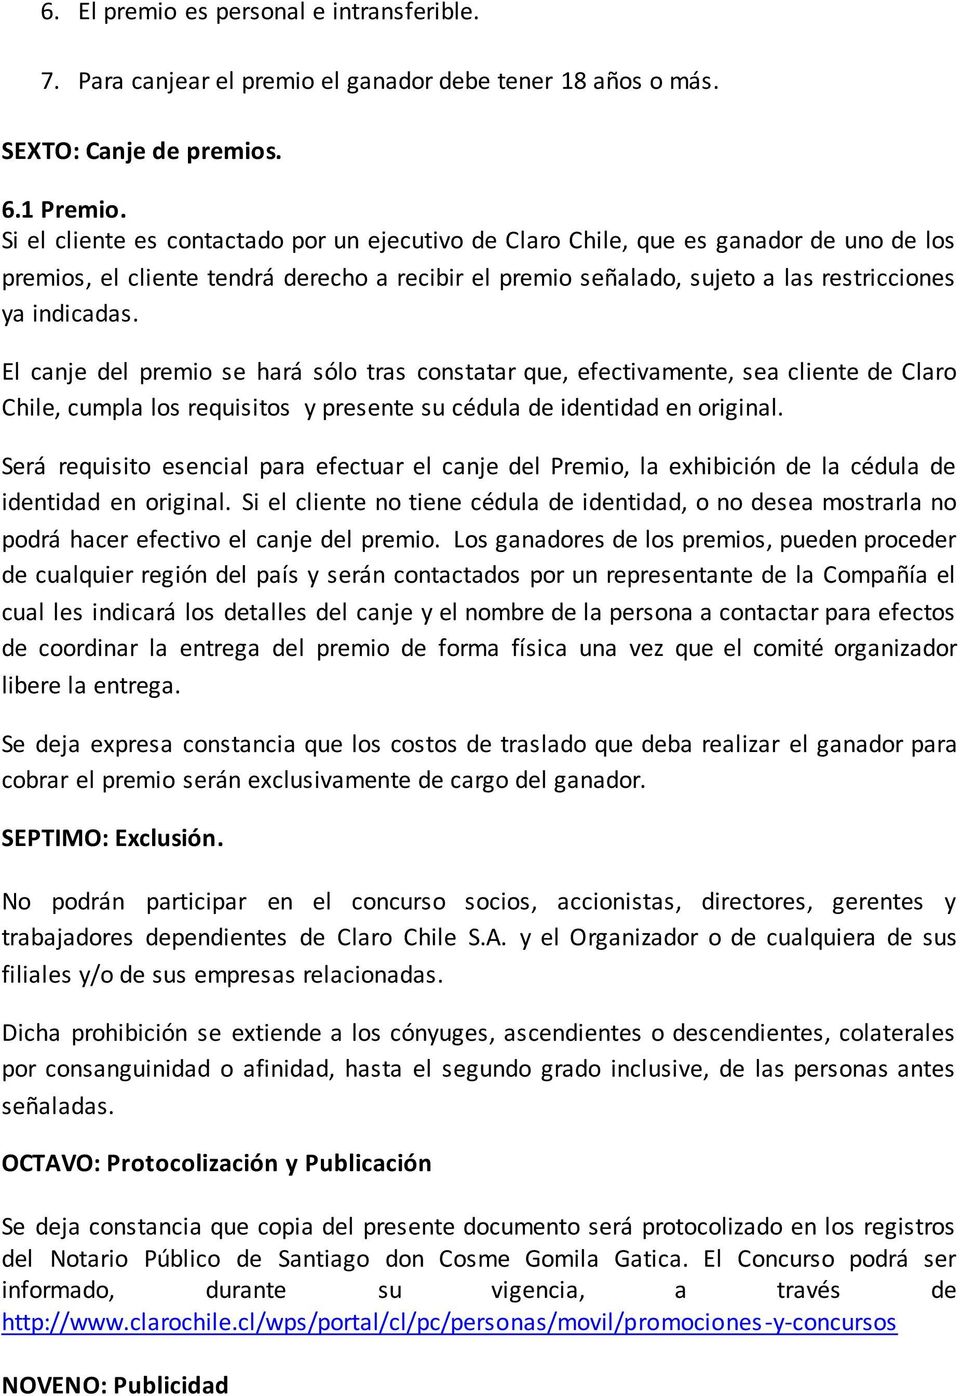 El canje del premio se hará sólo tras constatar que, efectivamente, sea cliente de Claro Chile, cumpla los requisitos y presente su cédula de identidad en original.